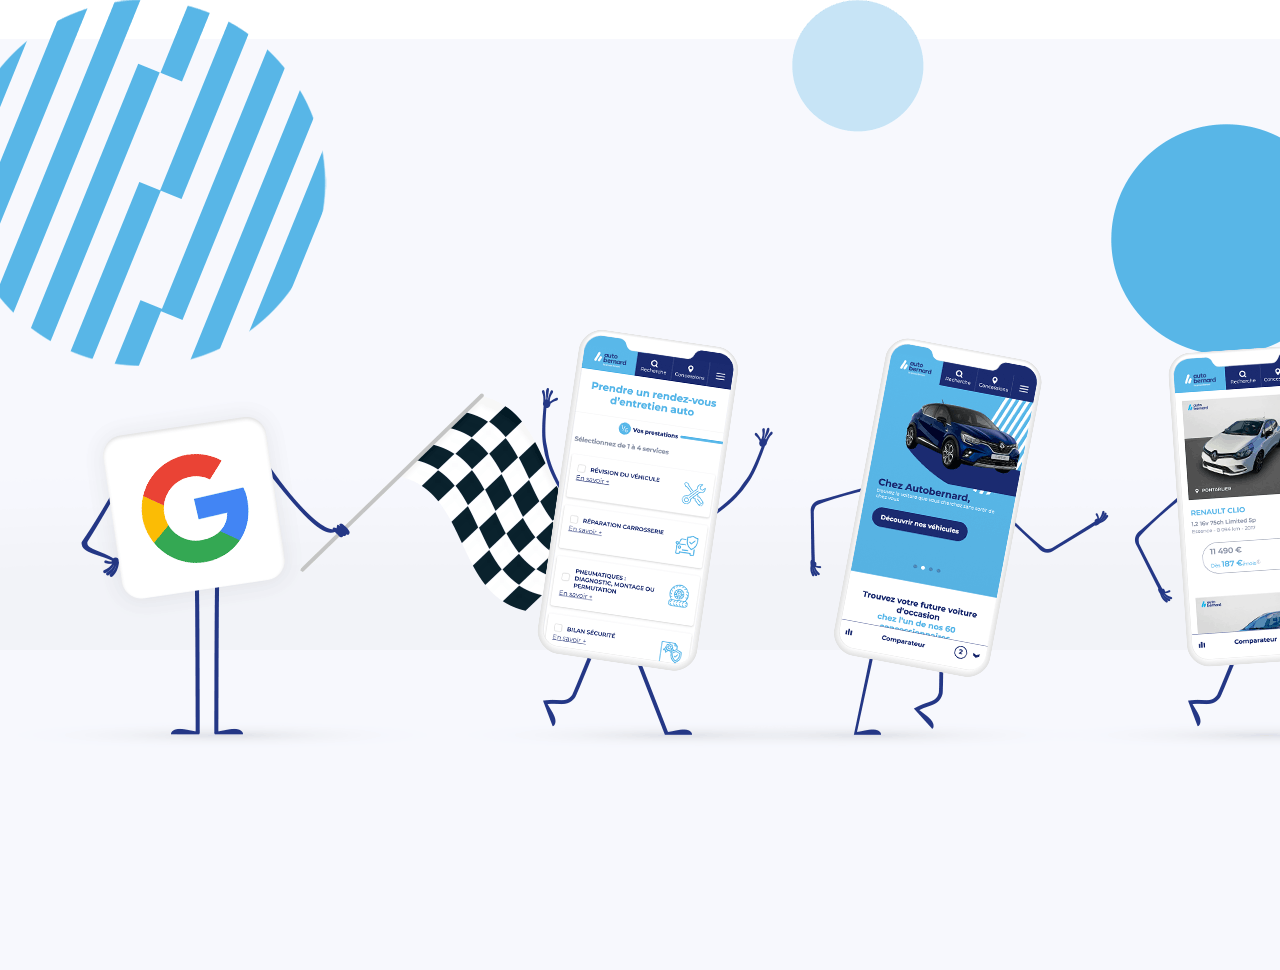 Google en personnage avec 3 portables à côté sur une ligne de départ de course